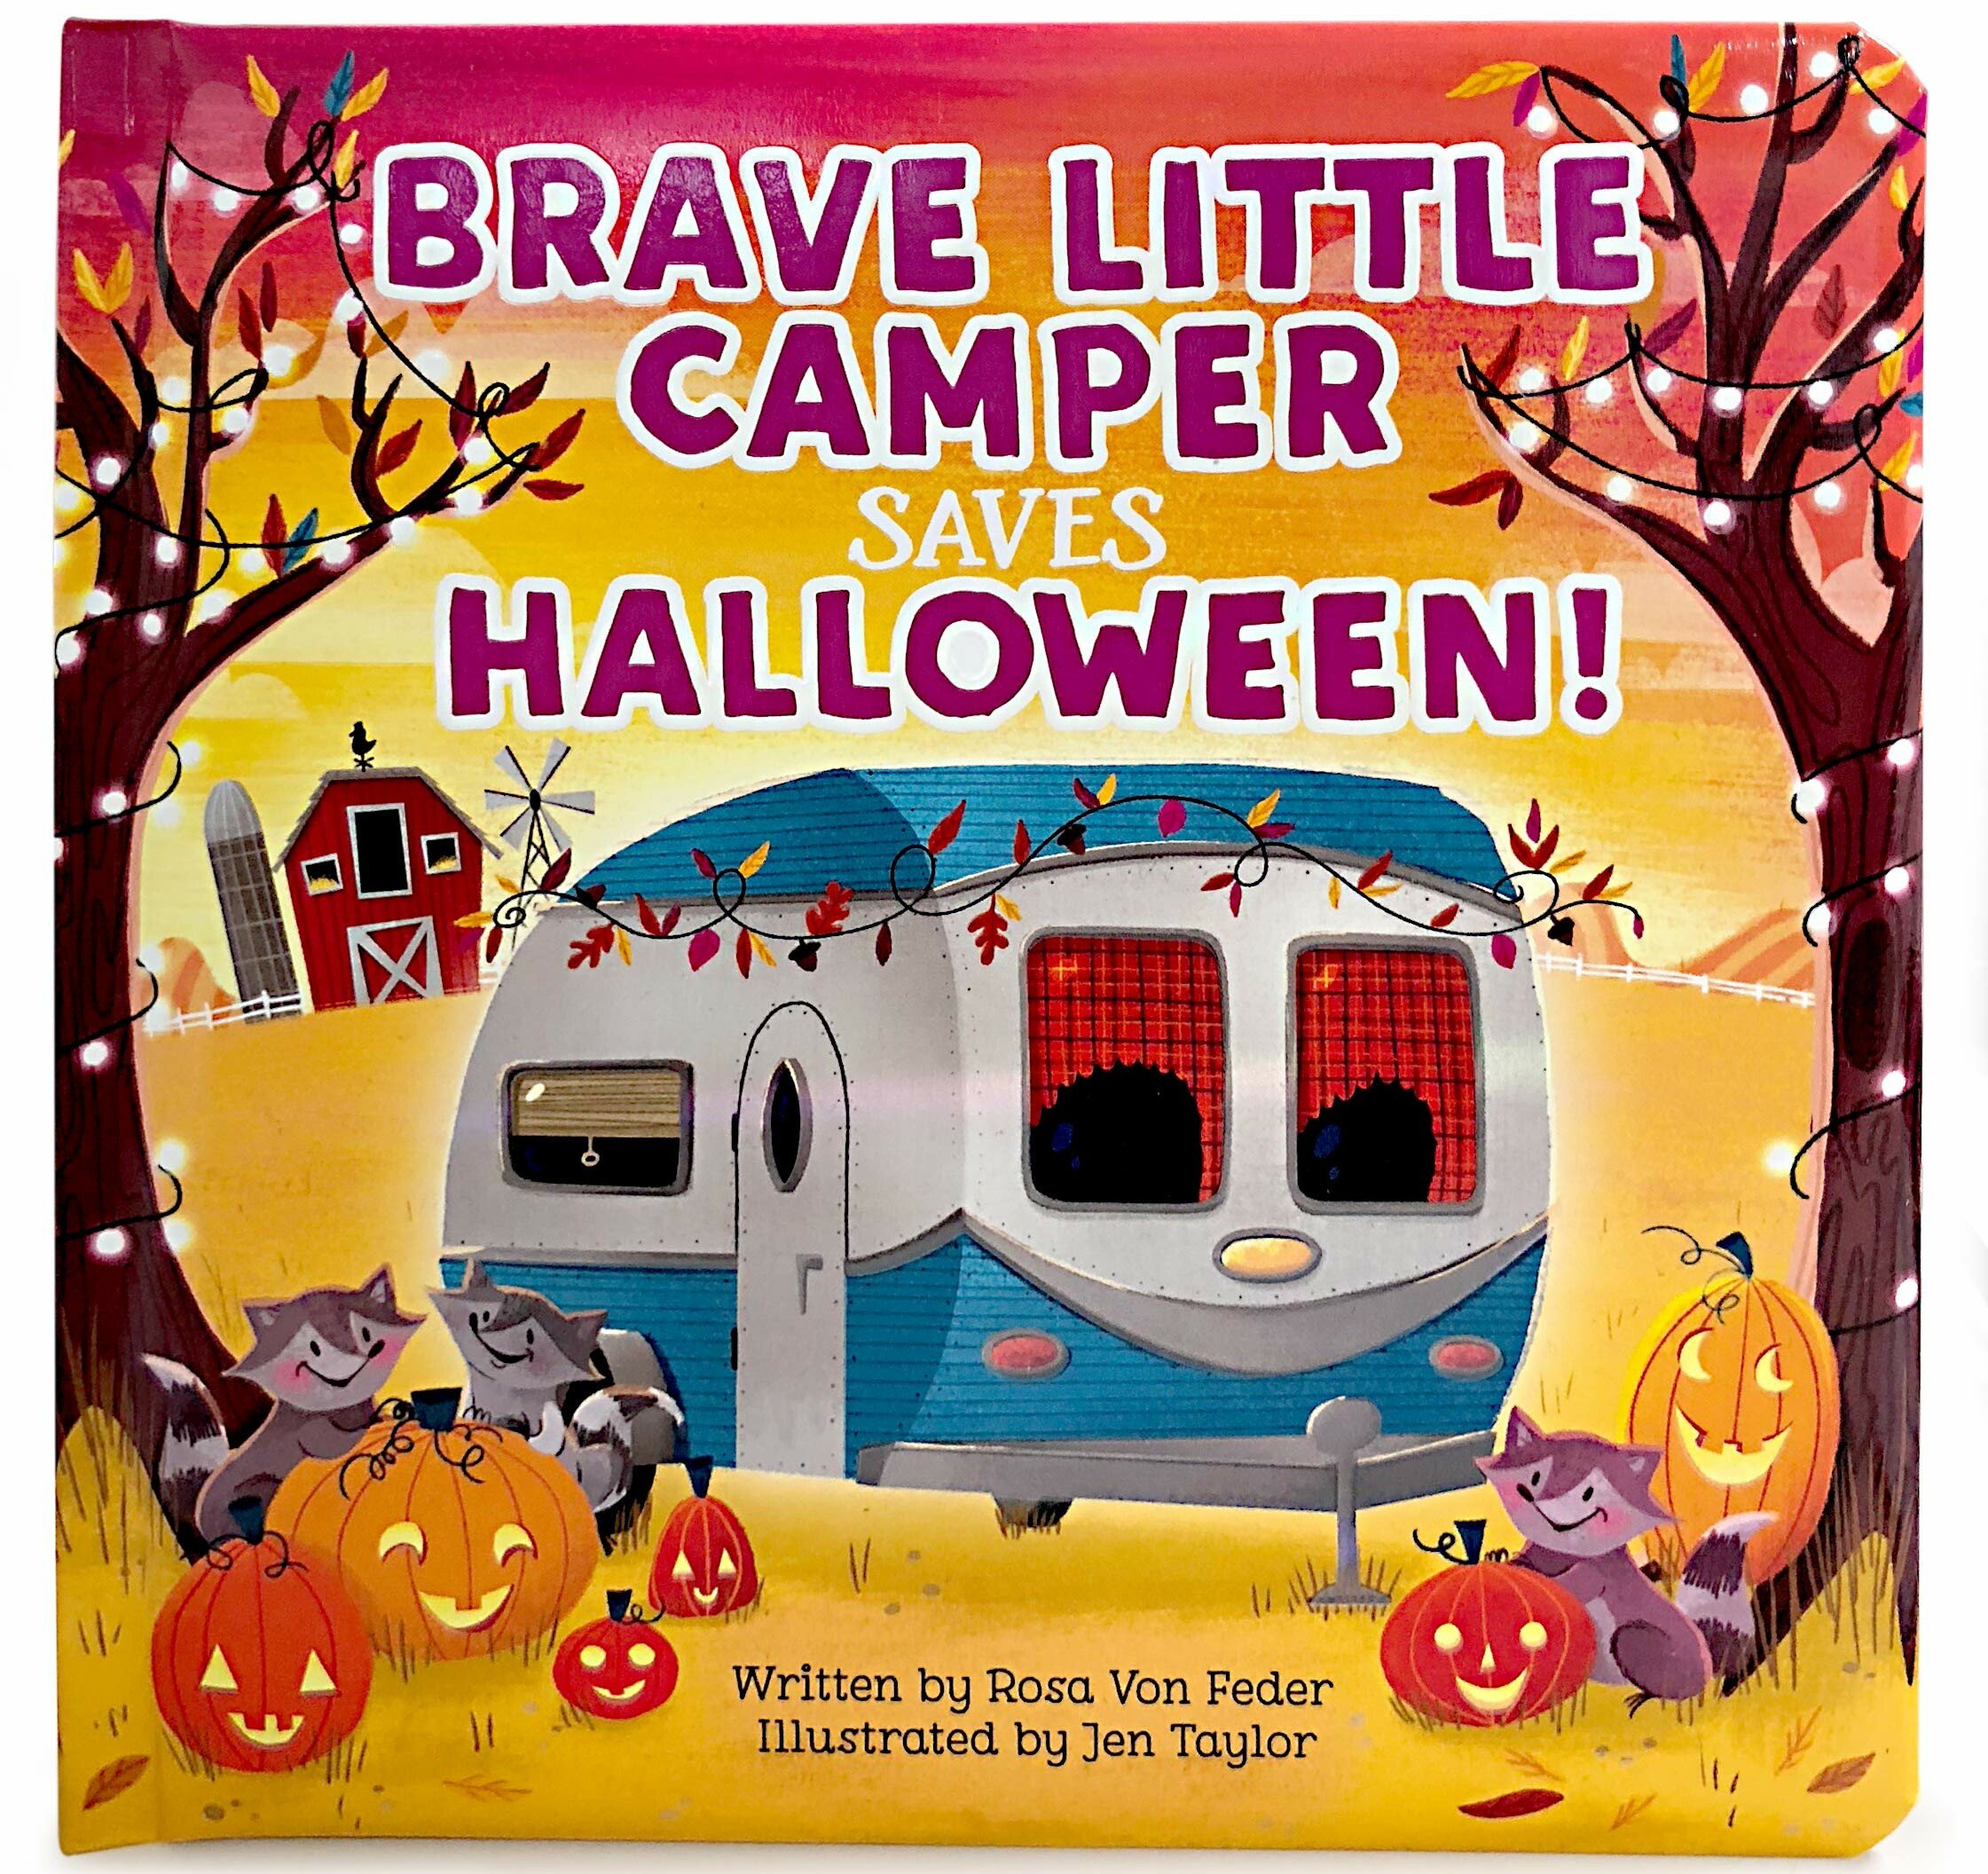 "Brave Little Camper Saves Halloween!" by Rosa Von Feder